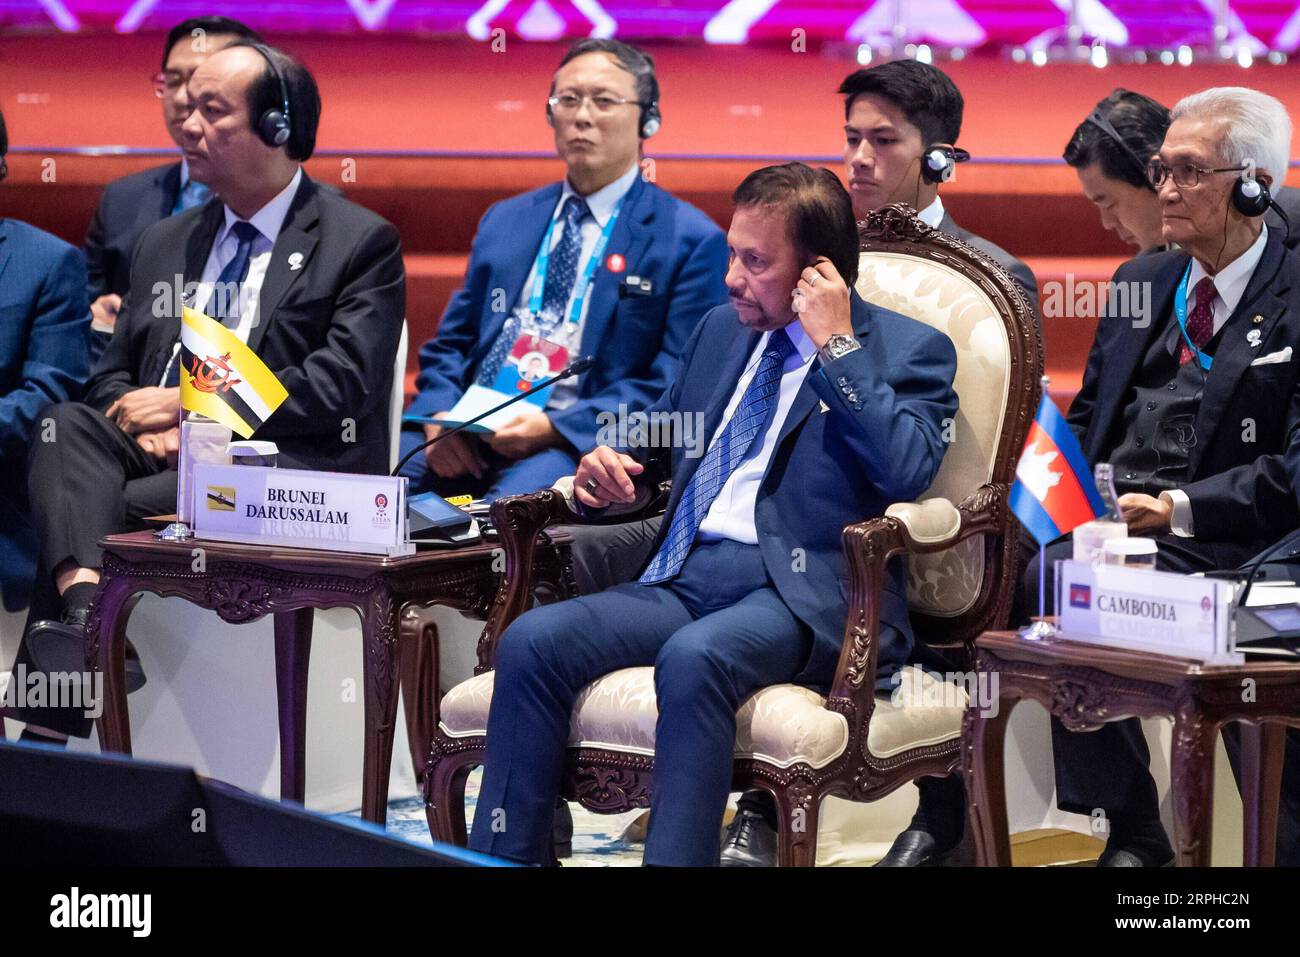 191104 -- BANGKOK, le 4 novembre 2019 -- Brunei Sultan Haji Hassanal Bolkiah Front participe au 14e Sommet de l'Asie de l'est à Bangkok, Thaïlande, le 4 novembre 2019. Le sommet est un événement régional annuel réunissant 10 membres de l'Association des nations de l'Asie du Sud-est ASEAN, ainsi que la Chine, le Japon, la Corée du Sud, l'Inde, l'Australie, nouvelle-Zélande, Russie et États-Unis. SOMMET THAÏLANDE-BANGKOK-ASIE DE L'EST ZhuxWei PUBLICATIONxNOTxINxCHN Banque D'Images